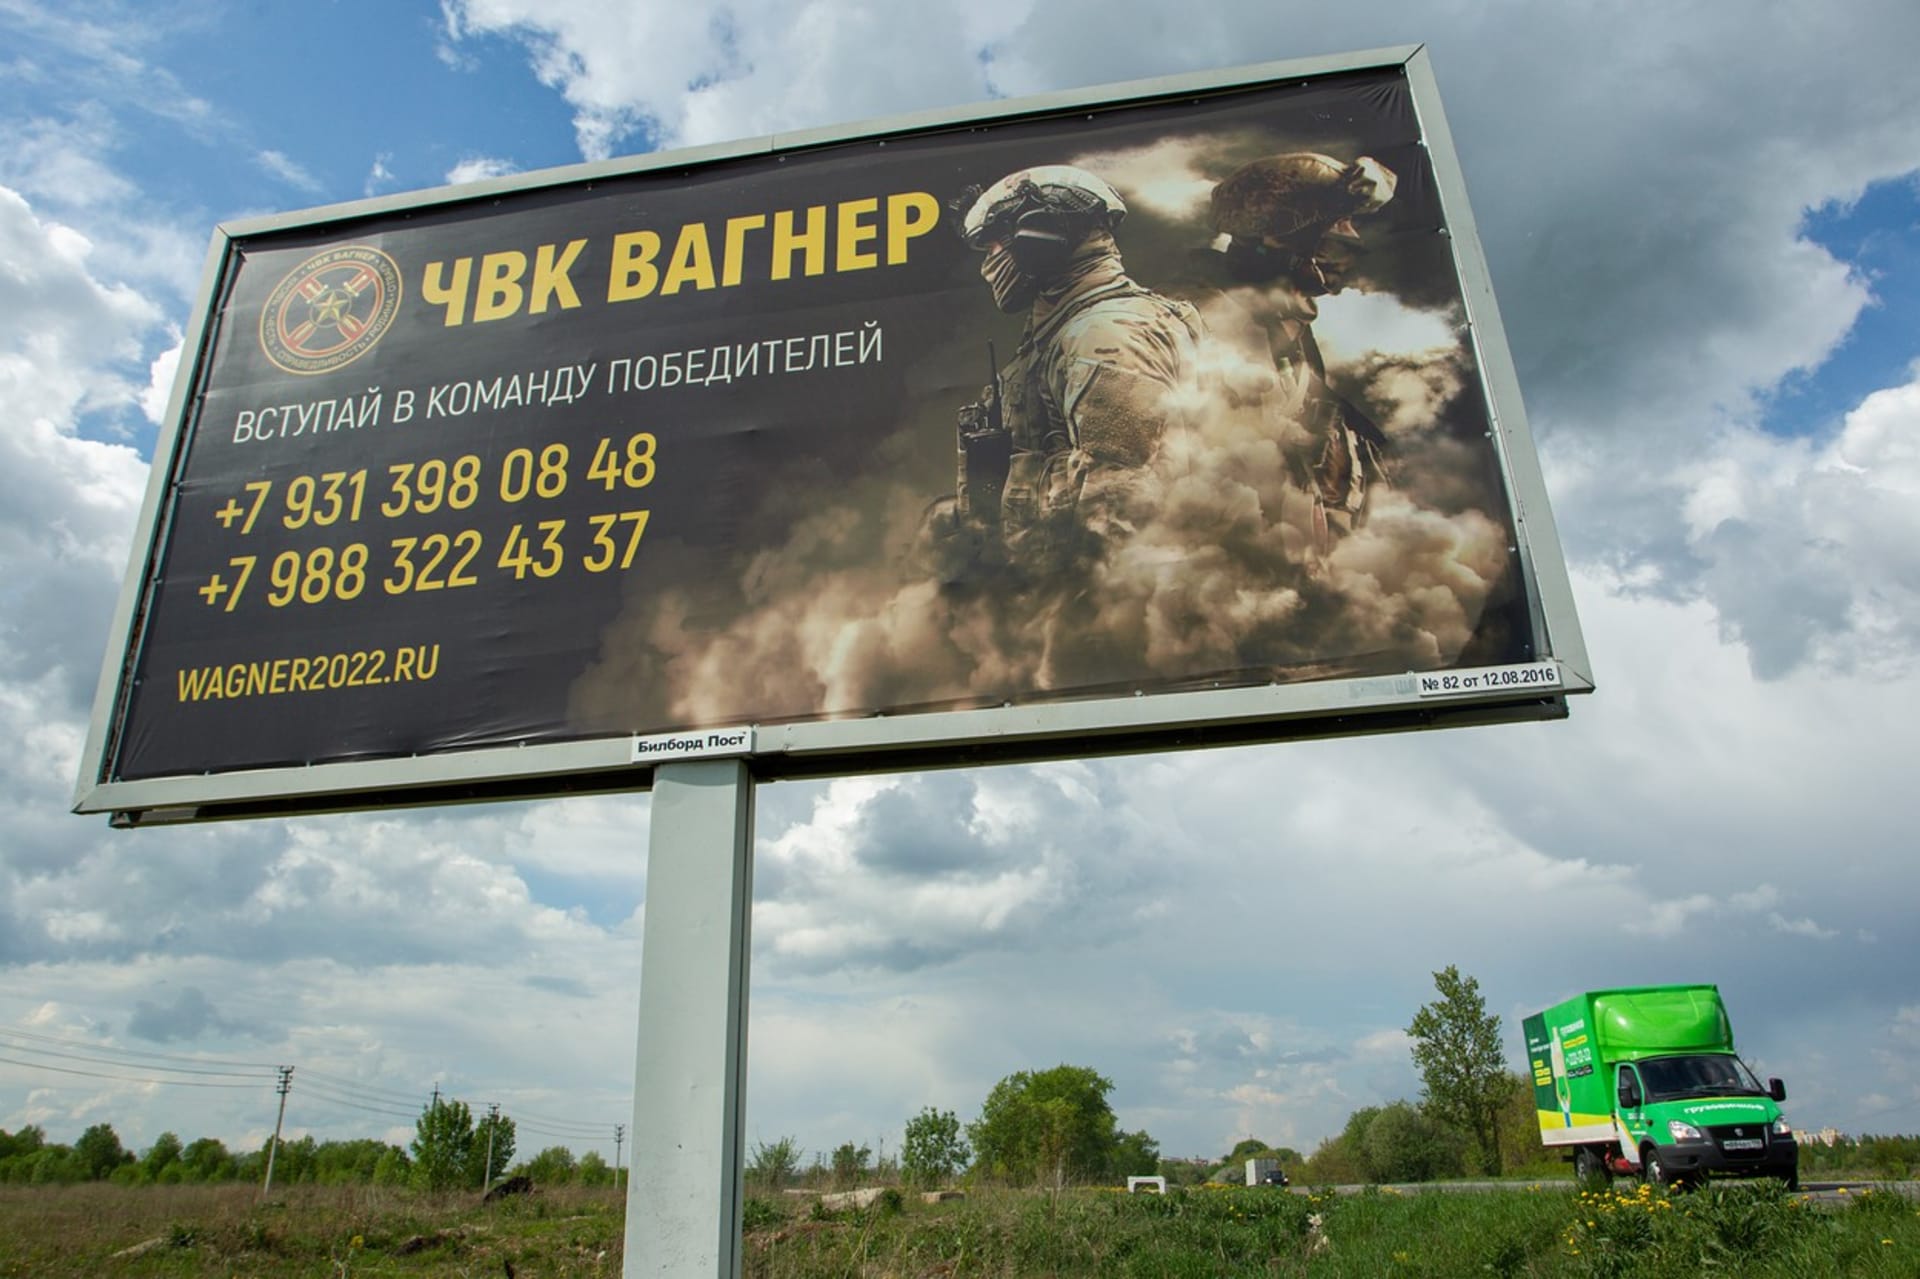 Reklamní billboard vagnerovců v Rusku